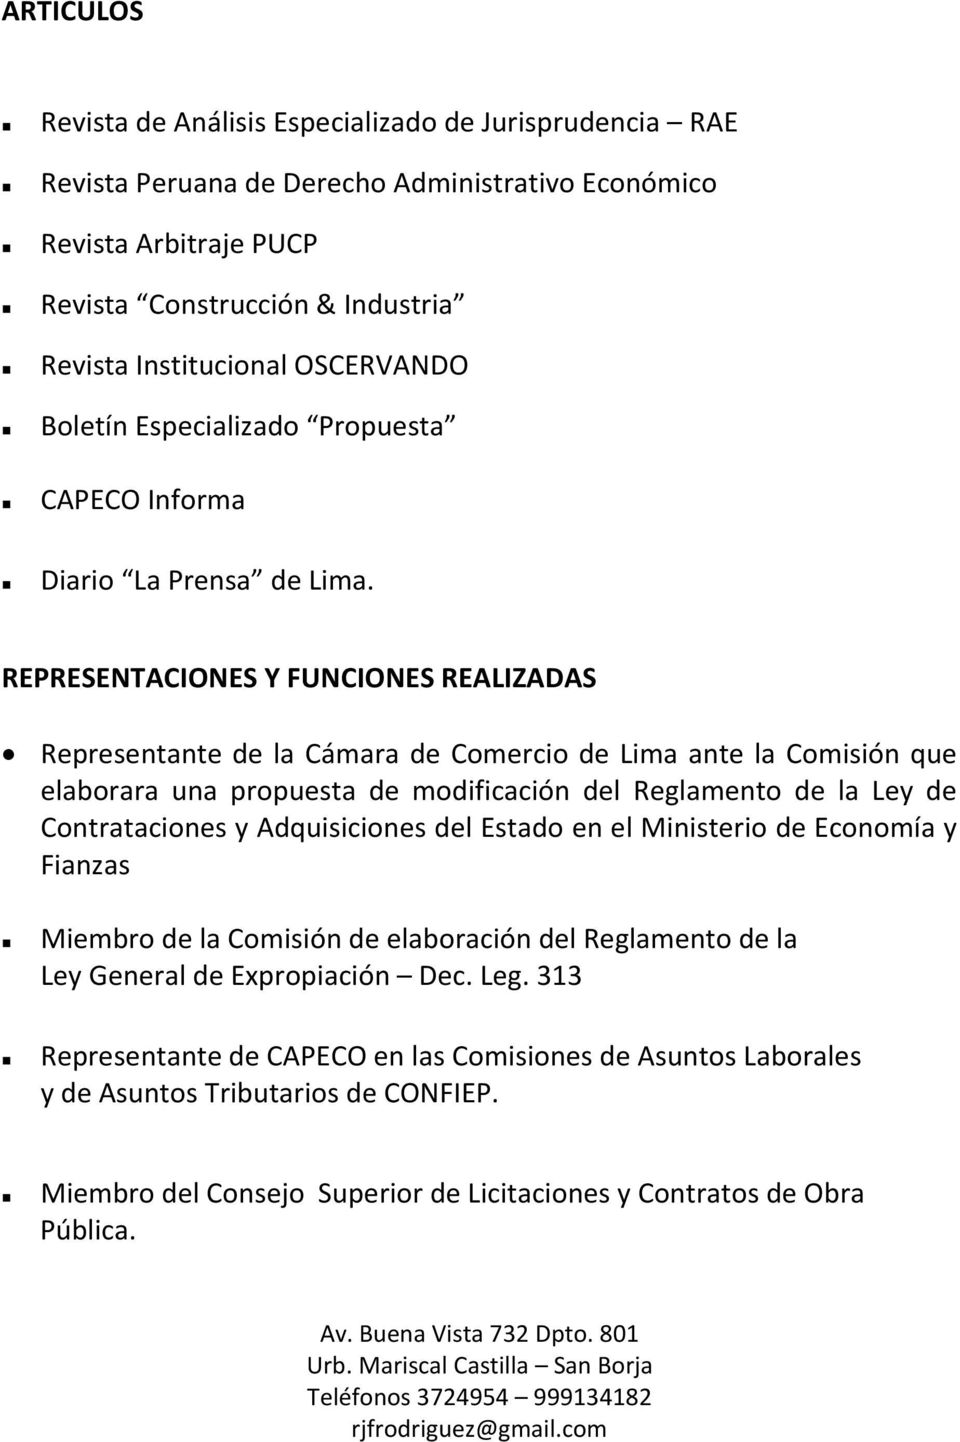 REPRESENTACIONES Y FUNCIONES REALIZADAS Representante de la Cámara de Comercio de Lima ante la Comisión que elaborara una propuesta de modificación del Reglamento de la Ley de Contrataciones y